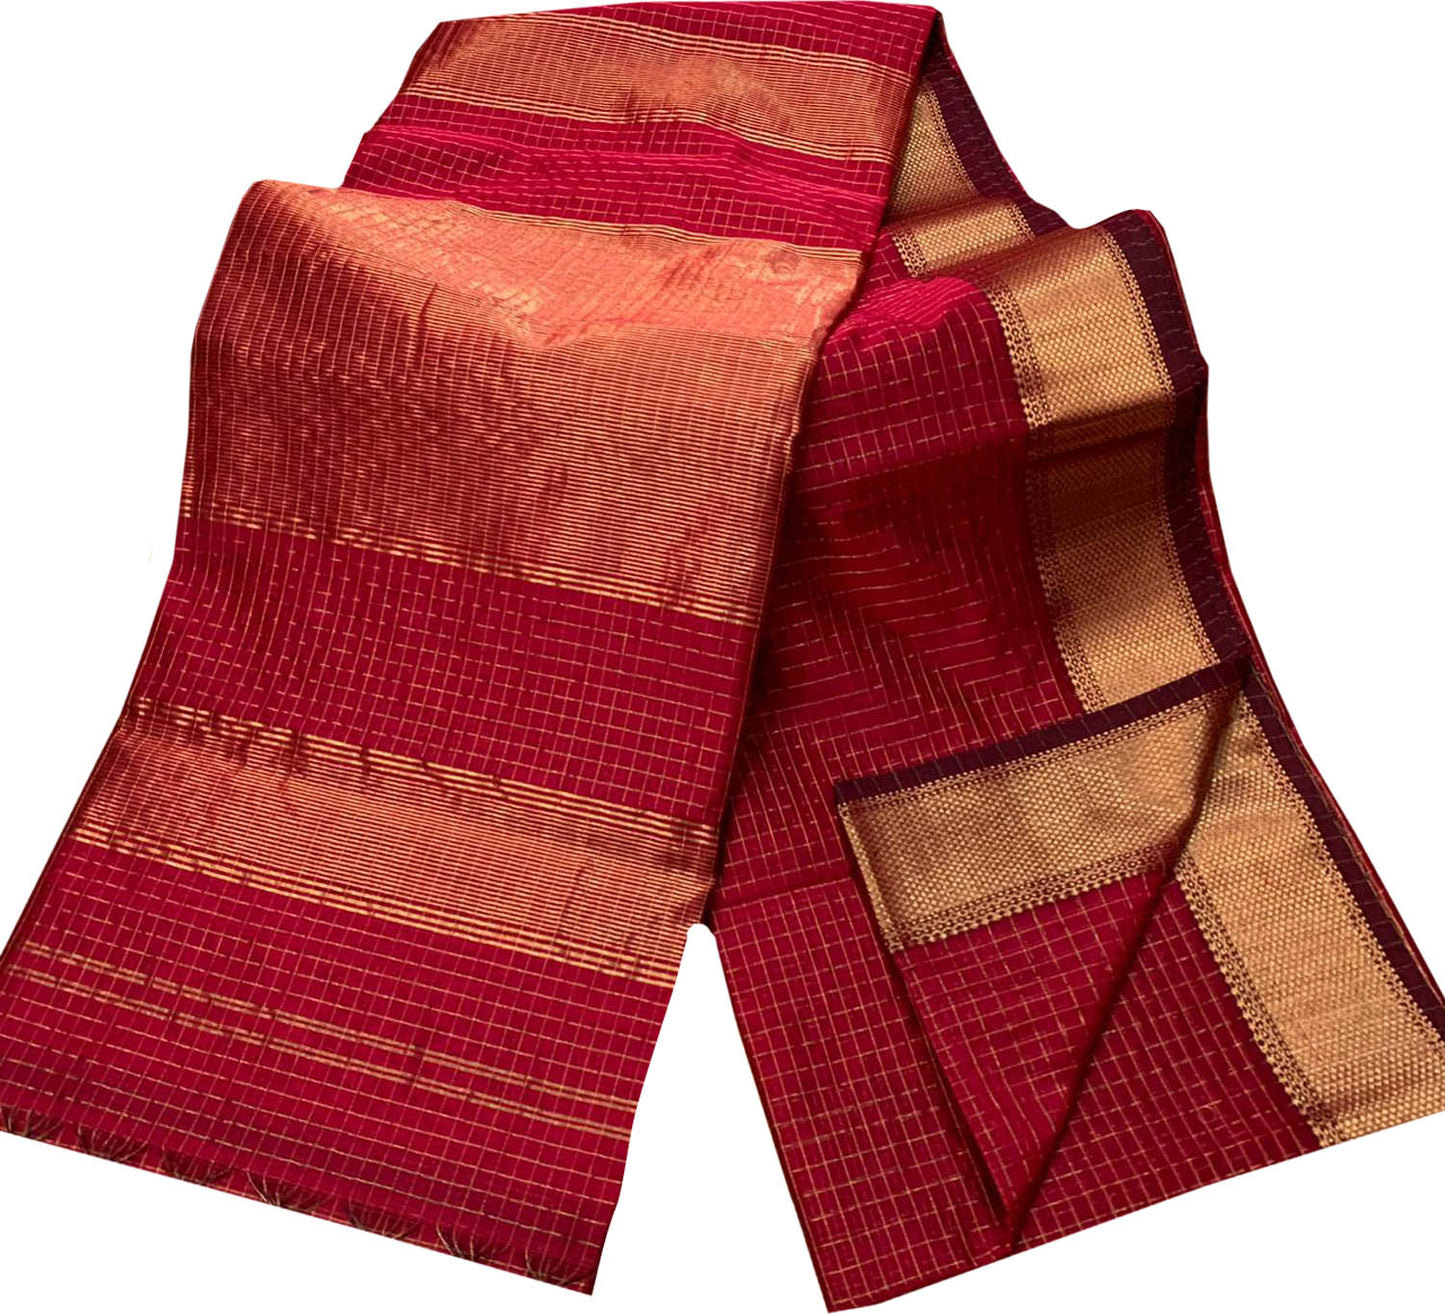 Stunning Red Maheshwari Handloom Checks Silk Saree - Luxurion World